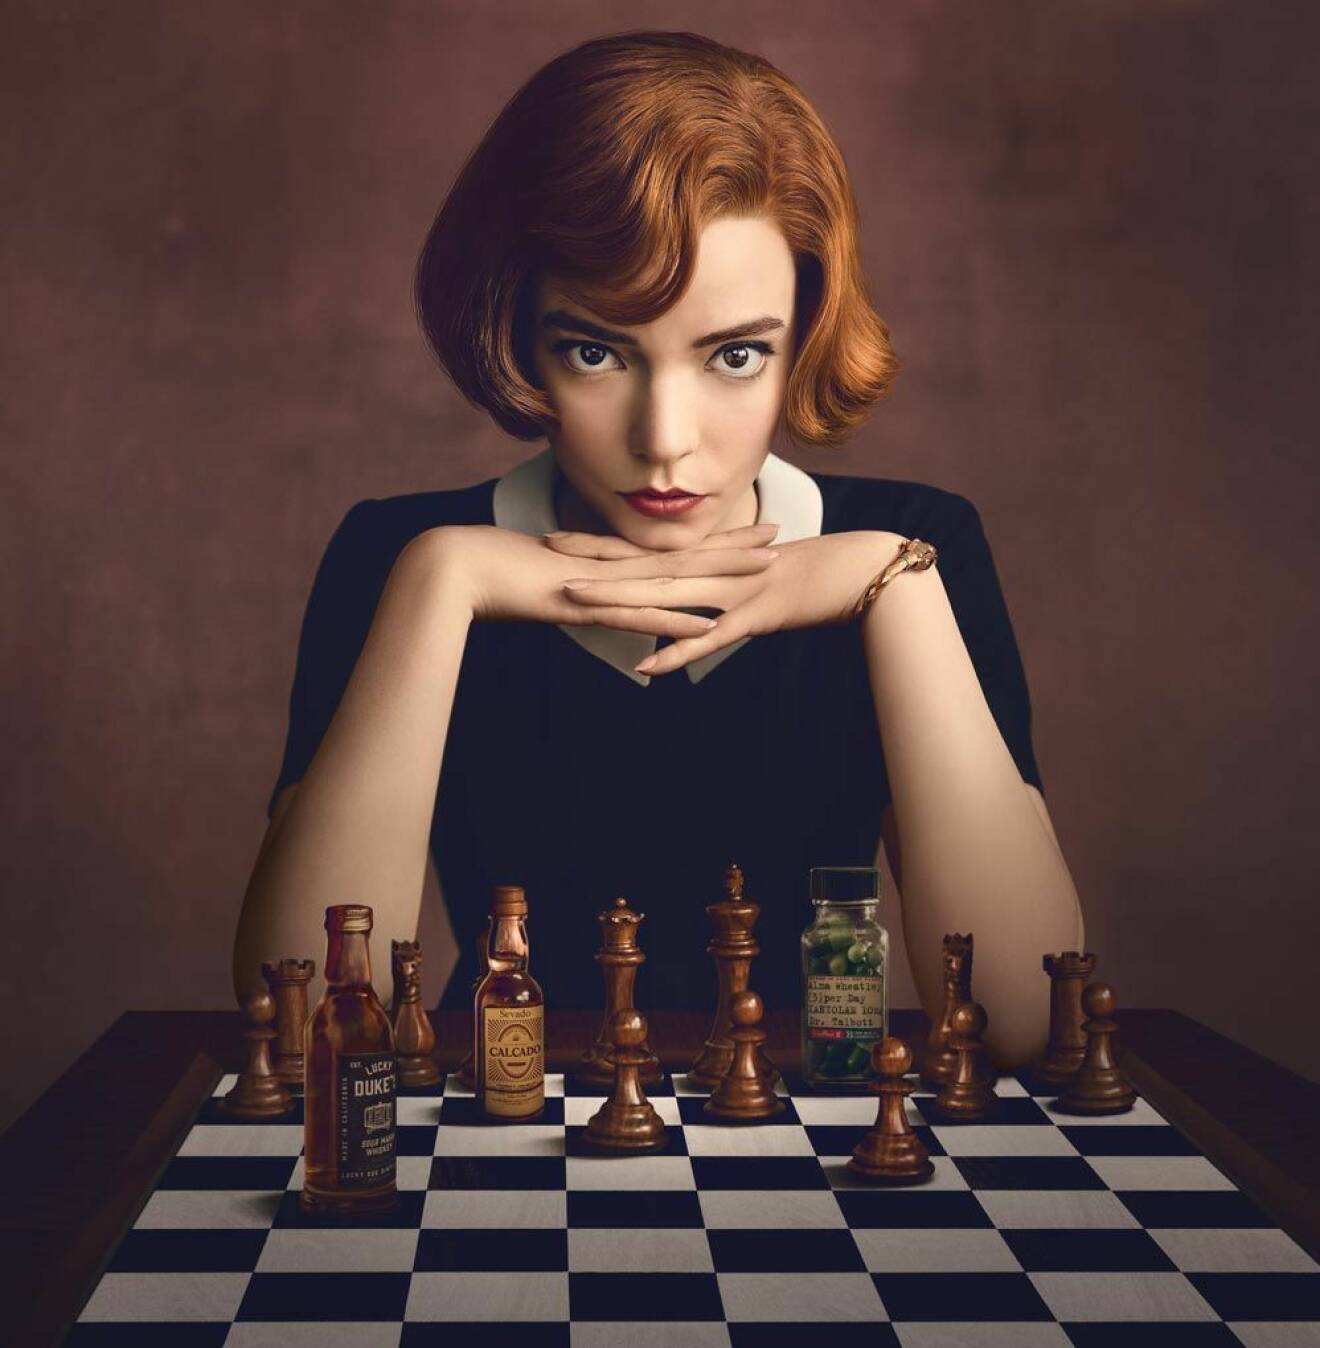 The queens gambit netflix beth harmon schack chess